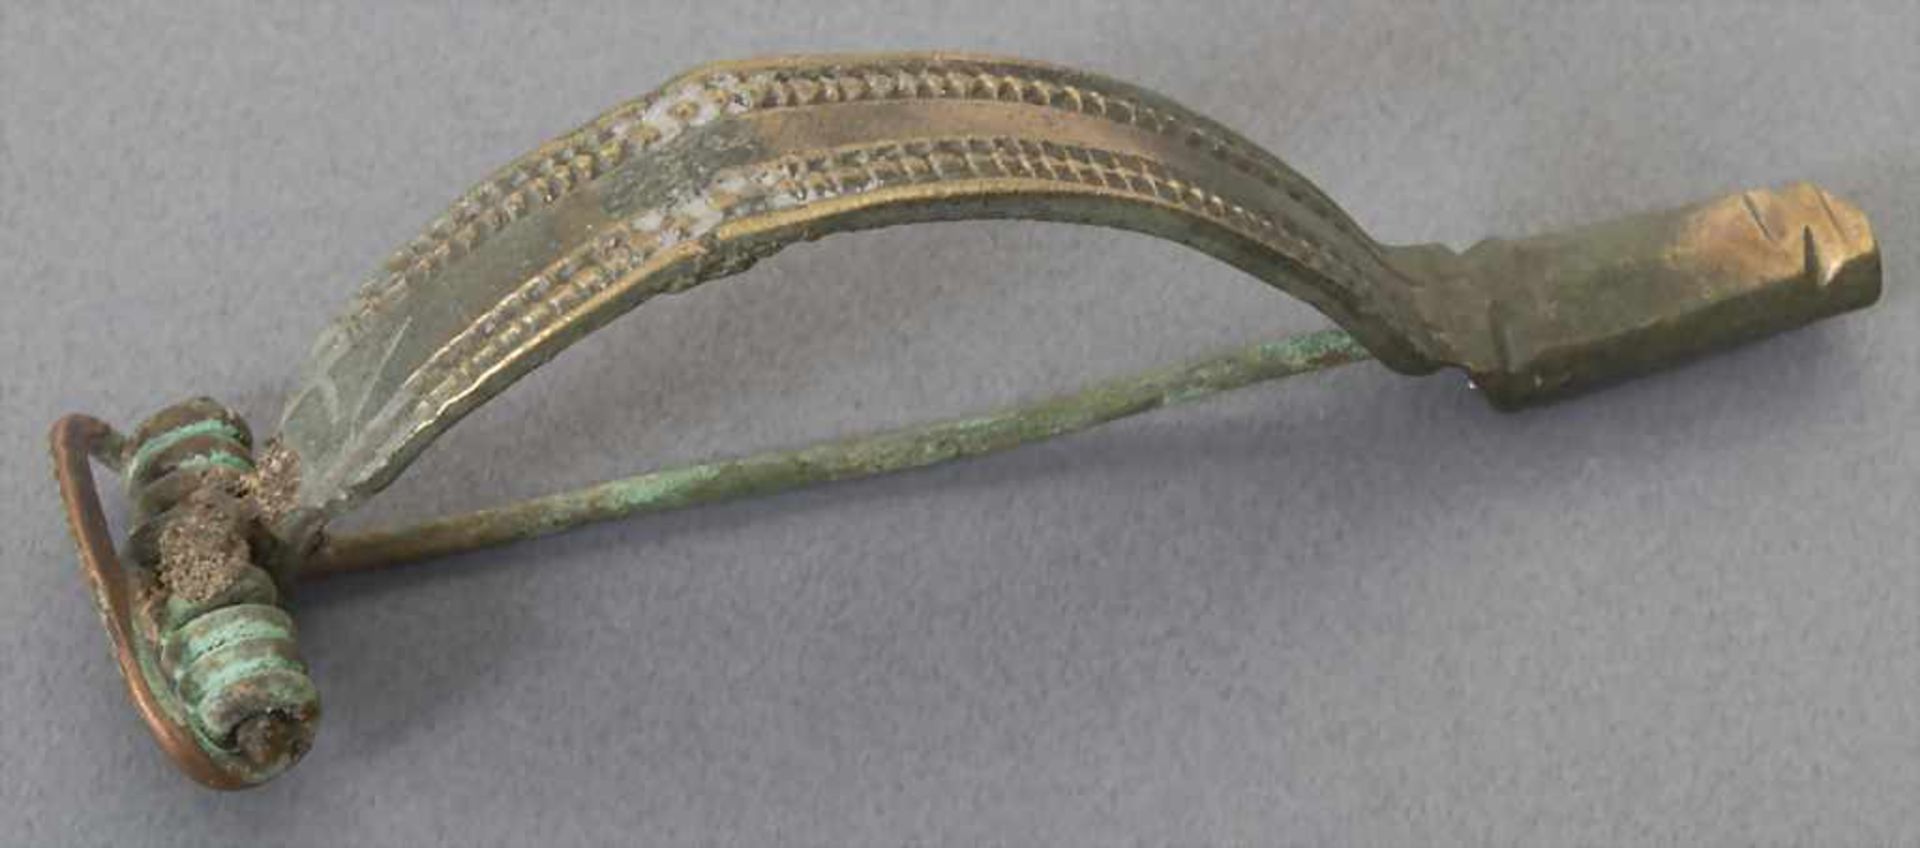 Keltische Fibel / A celtic fibulaMaterial: Bronze,Länge: 6,7 cm,Zustand: gut, alt restauriert,